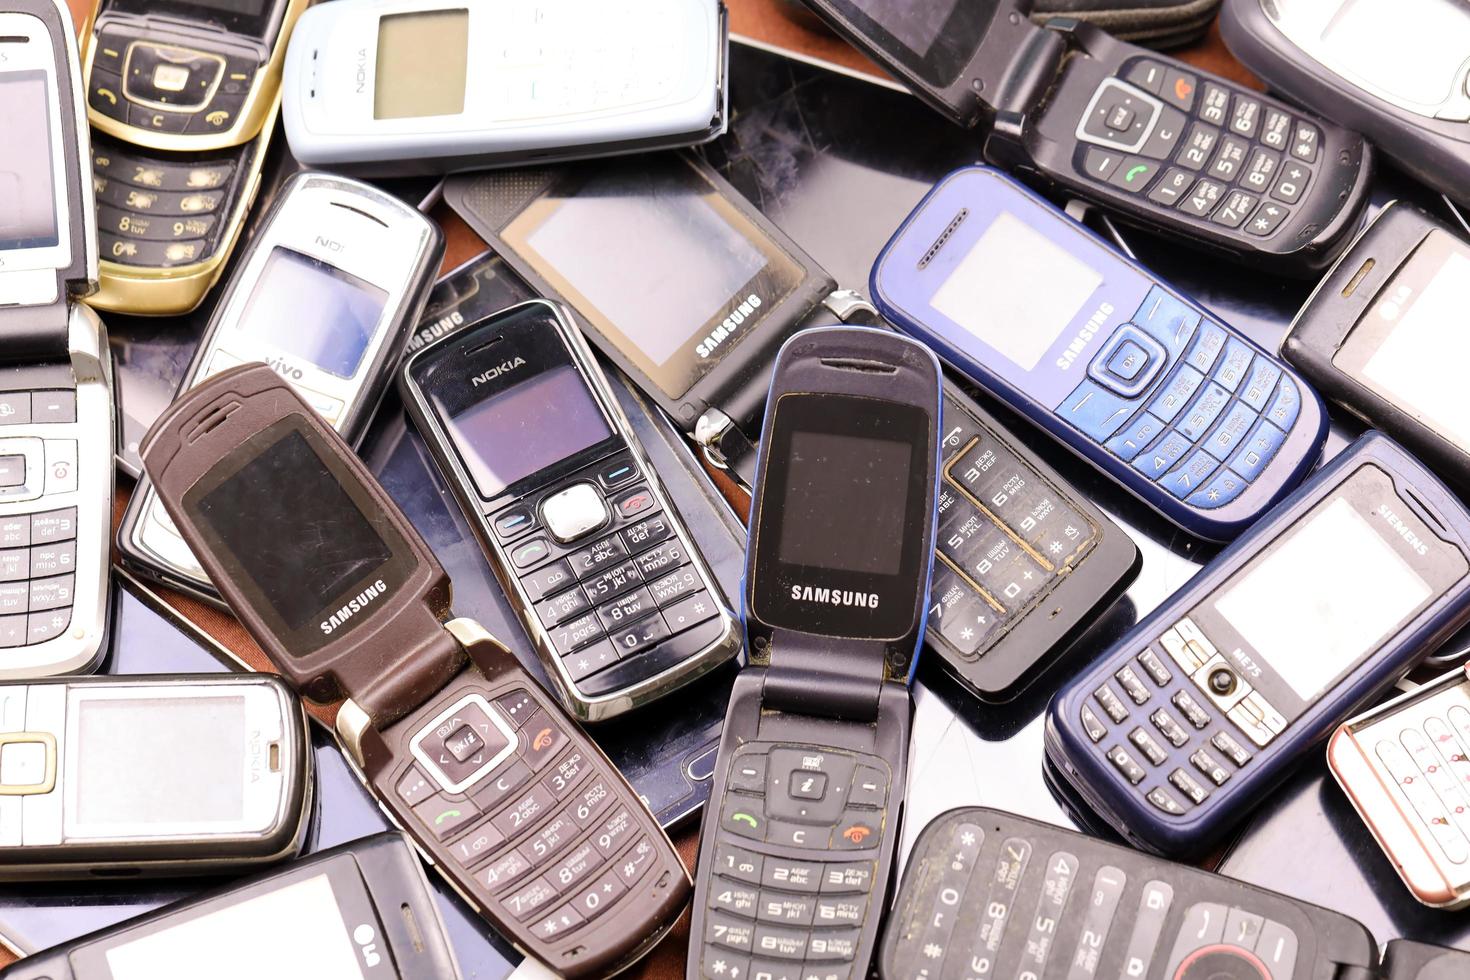 kharkiv, ucrania - 16 de diciembre de 2021 algunos teléfonos móviles antiguos usados del período 90-2000. Reciclaje de productos electrónicos en el mercado. foto